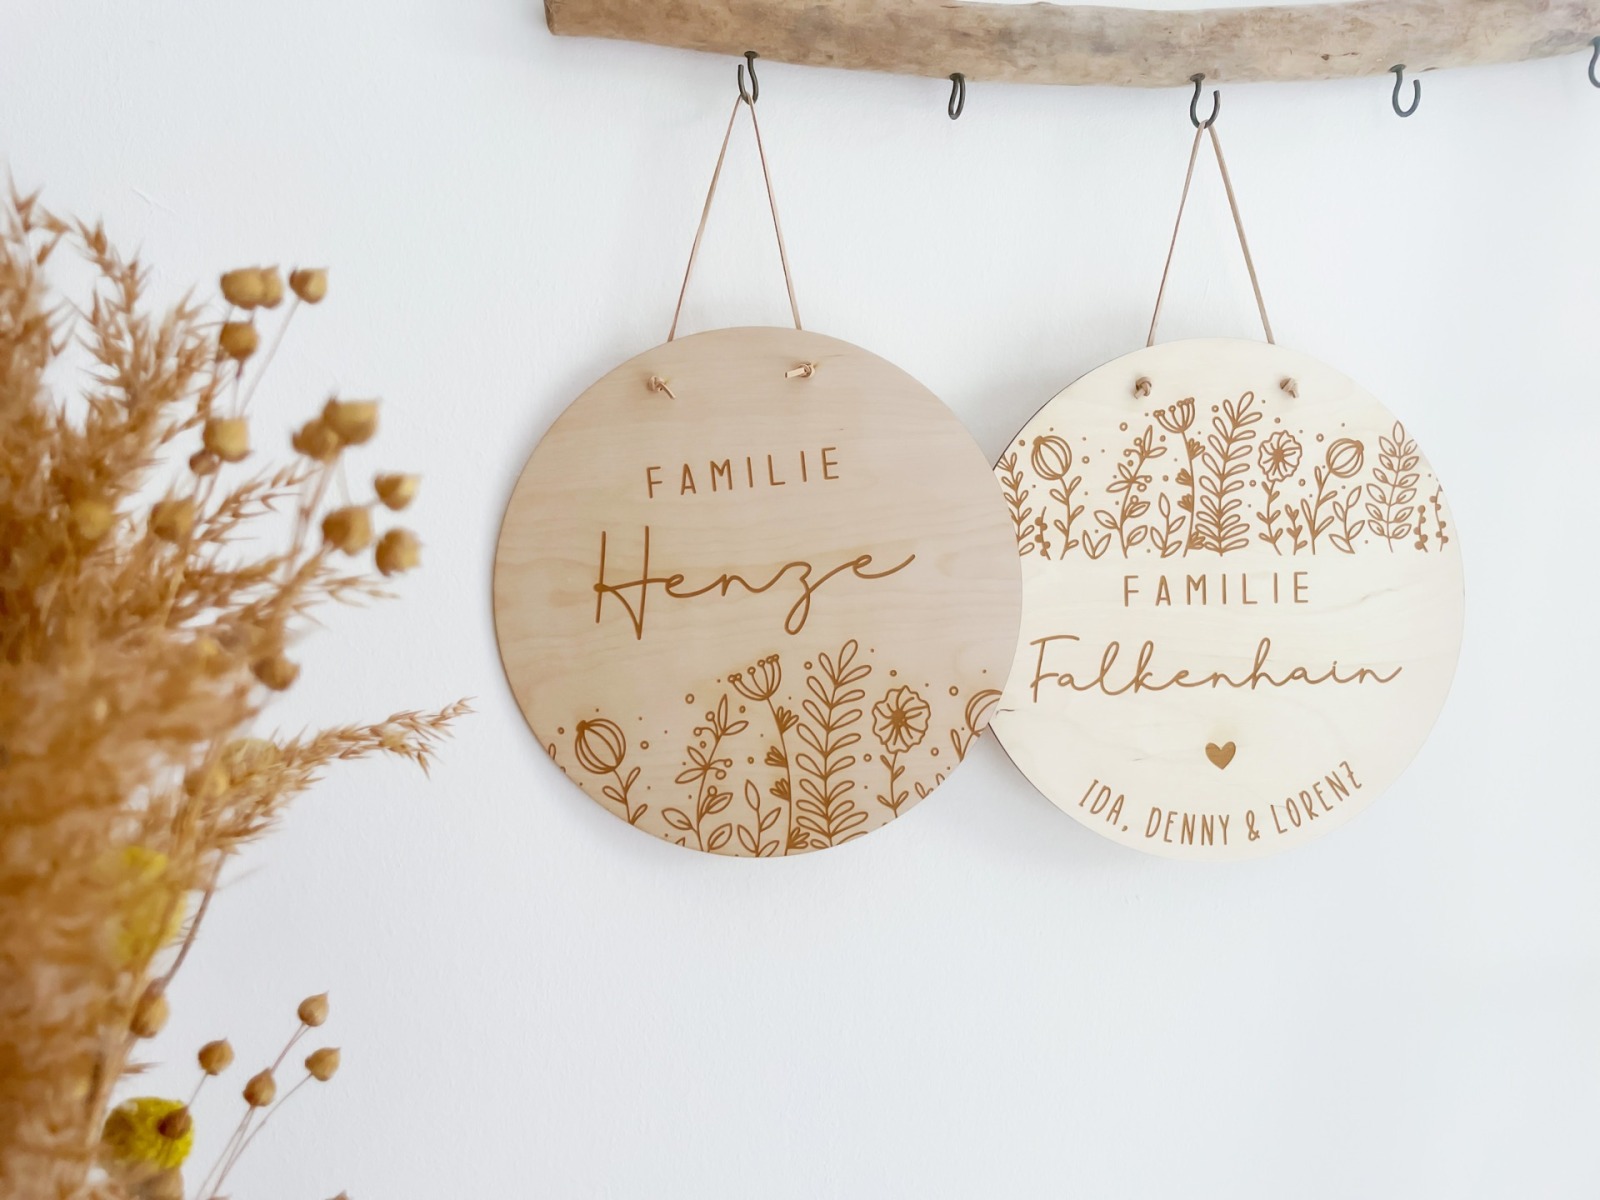 Familienschild personalisiert aus Holz Türkranz mit Namen Individuelles Geschenk zum Einzug